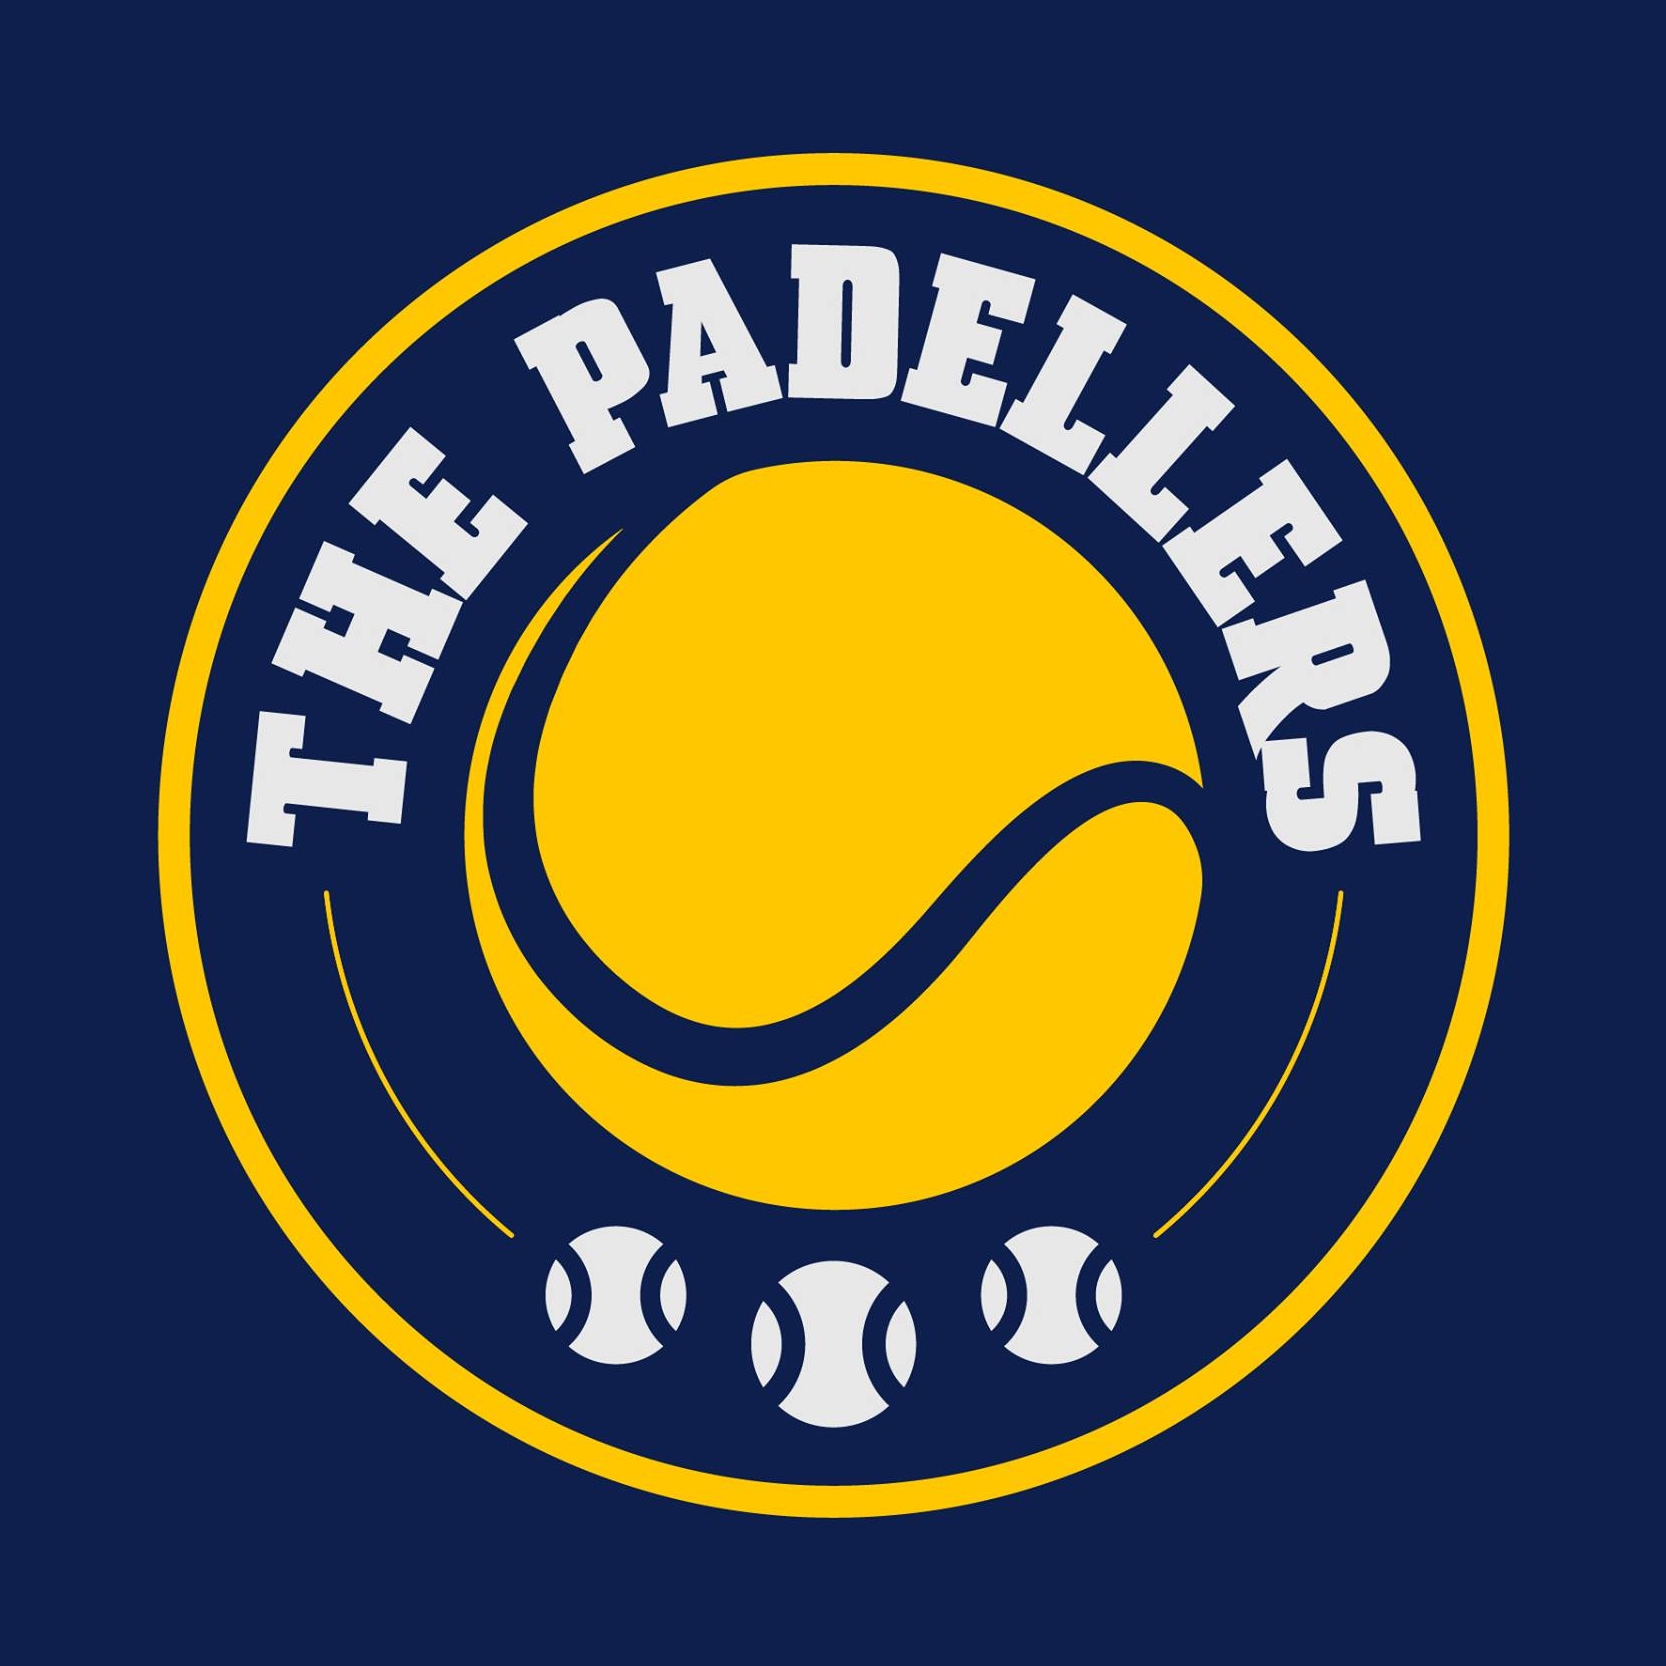 Profile image of venue The Padellers - Valkenswaard